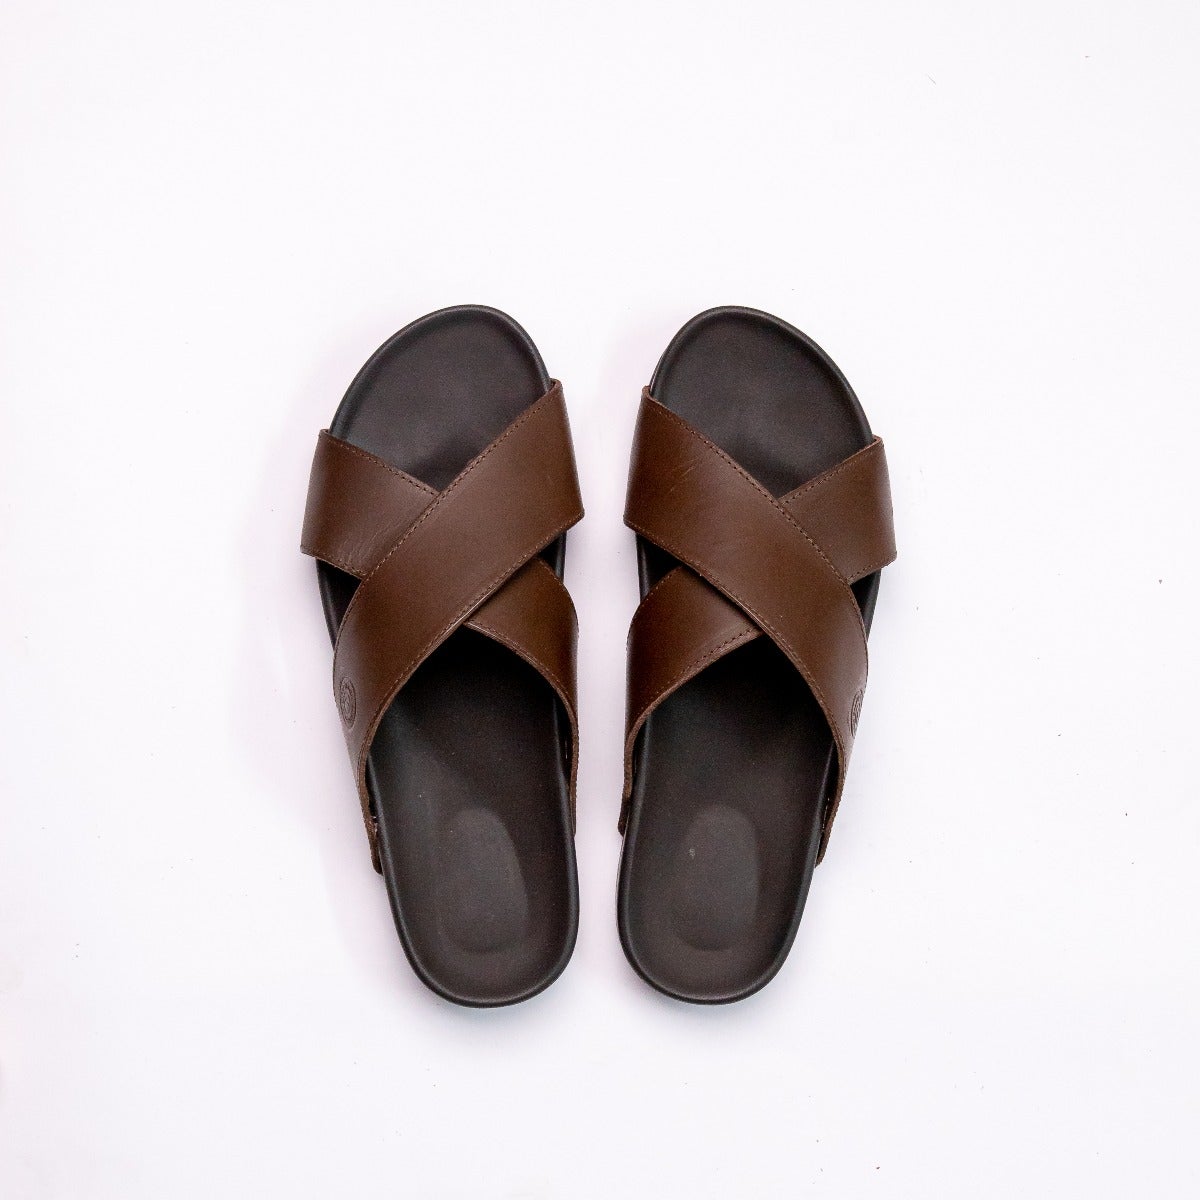 Men's Leather (Genuine) Sandals, Slides & Flip-Flops | Nordstrom